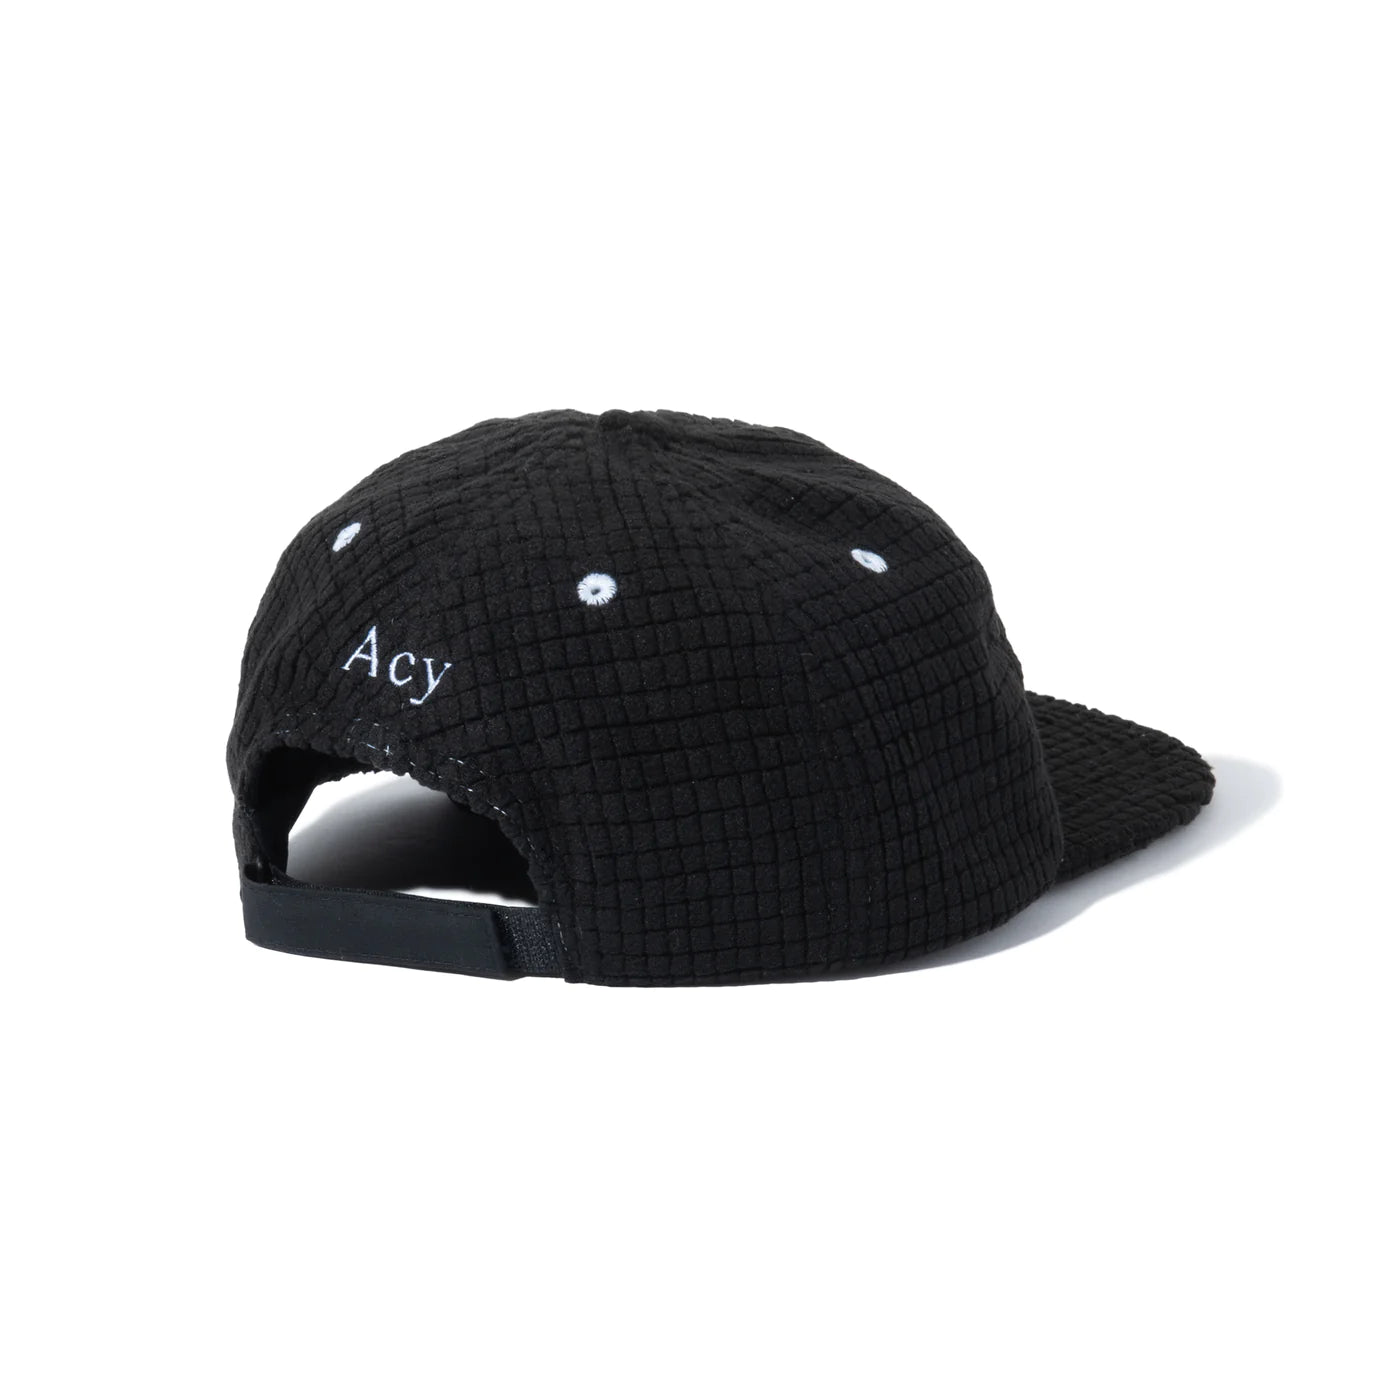 Acy / FLEECE 6PANEL CAP